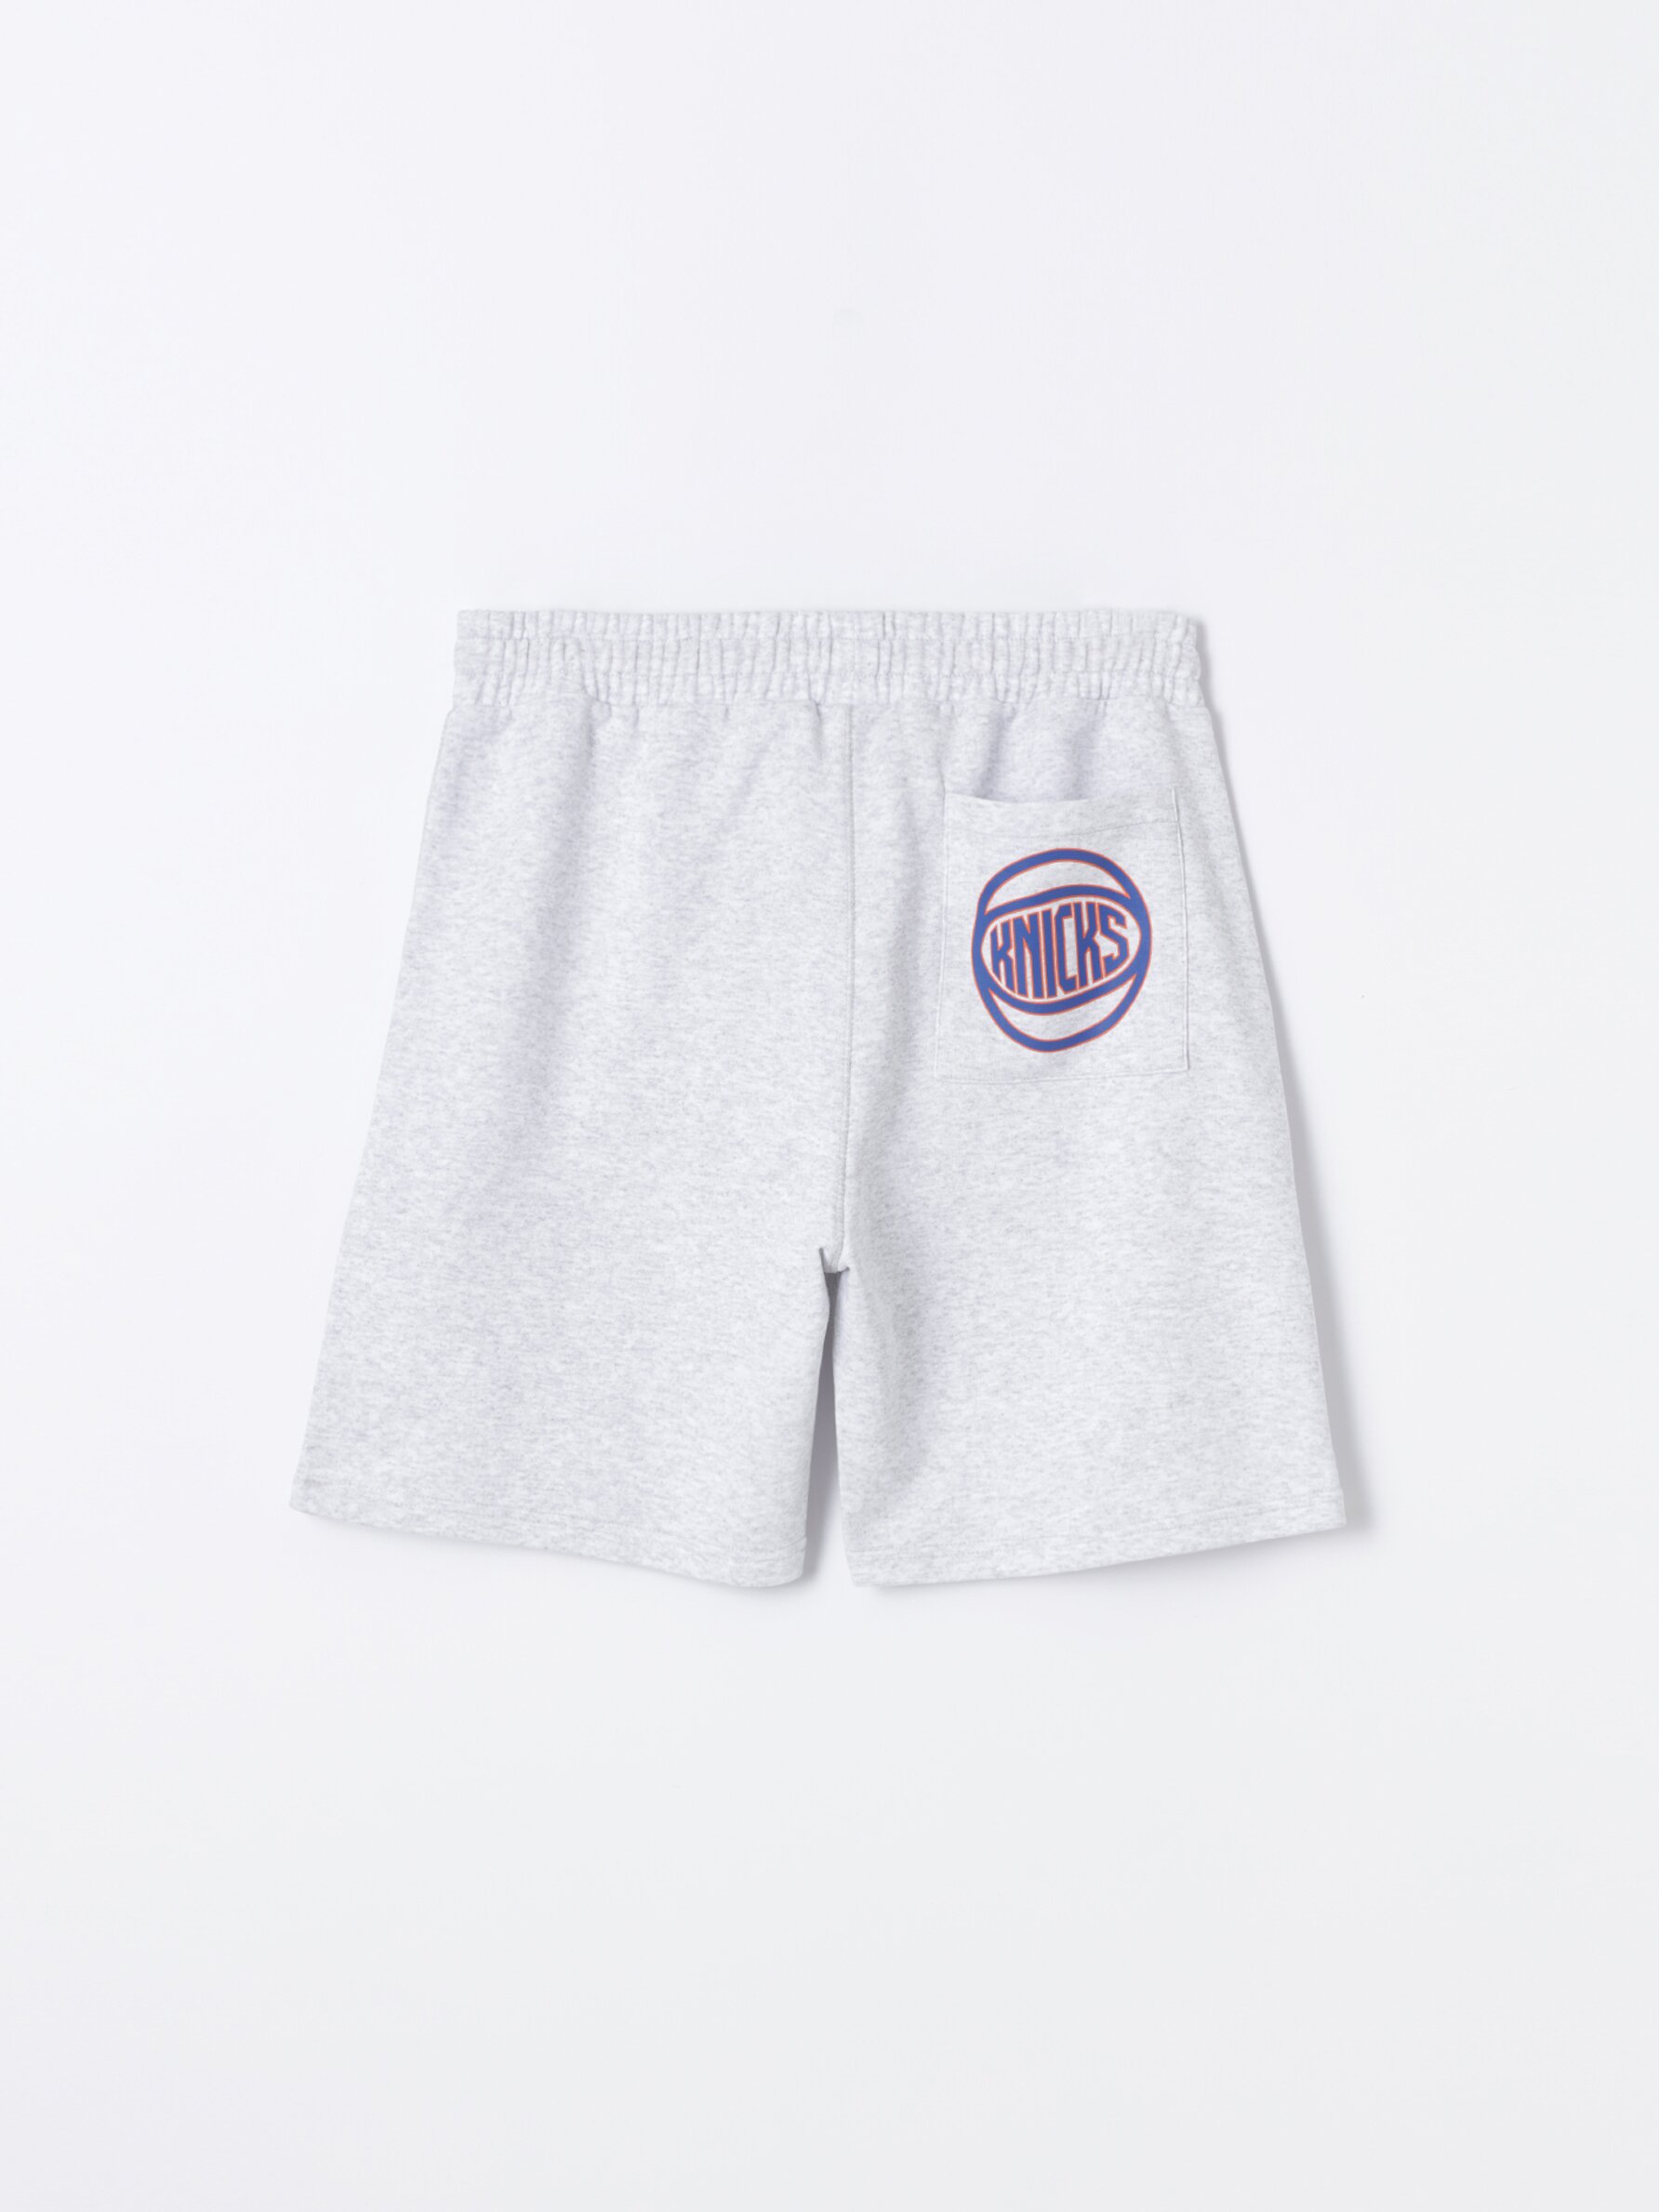 New York Knicks NBA Bermuda shorts - Collabs - CLOTHING - Man